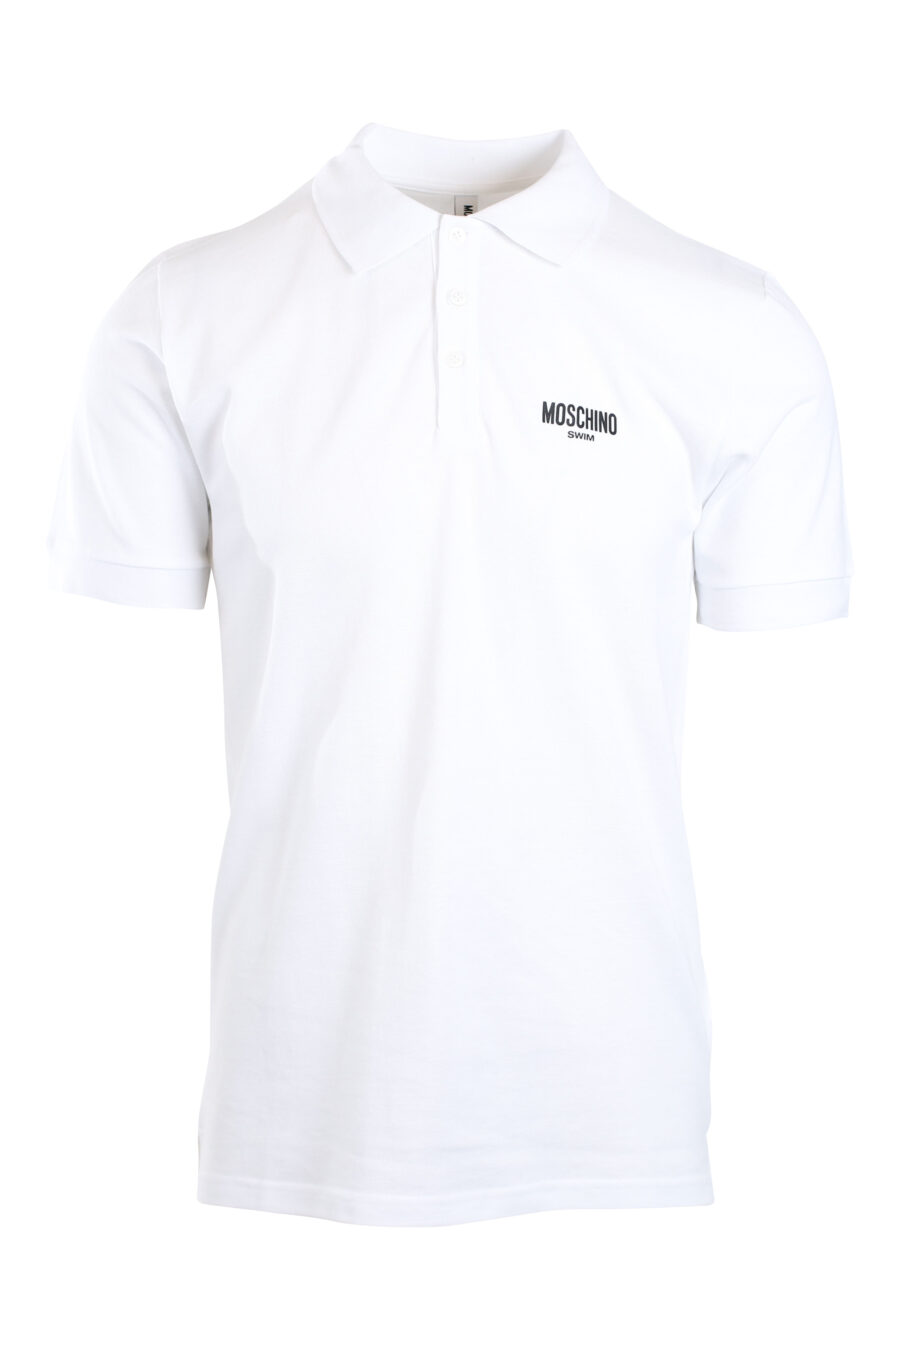 Pólo branco com mini-logotipo preto "swim" - IMG 2179